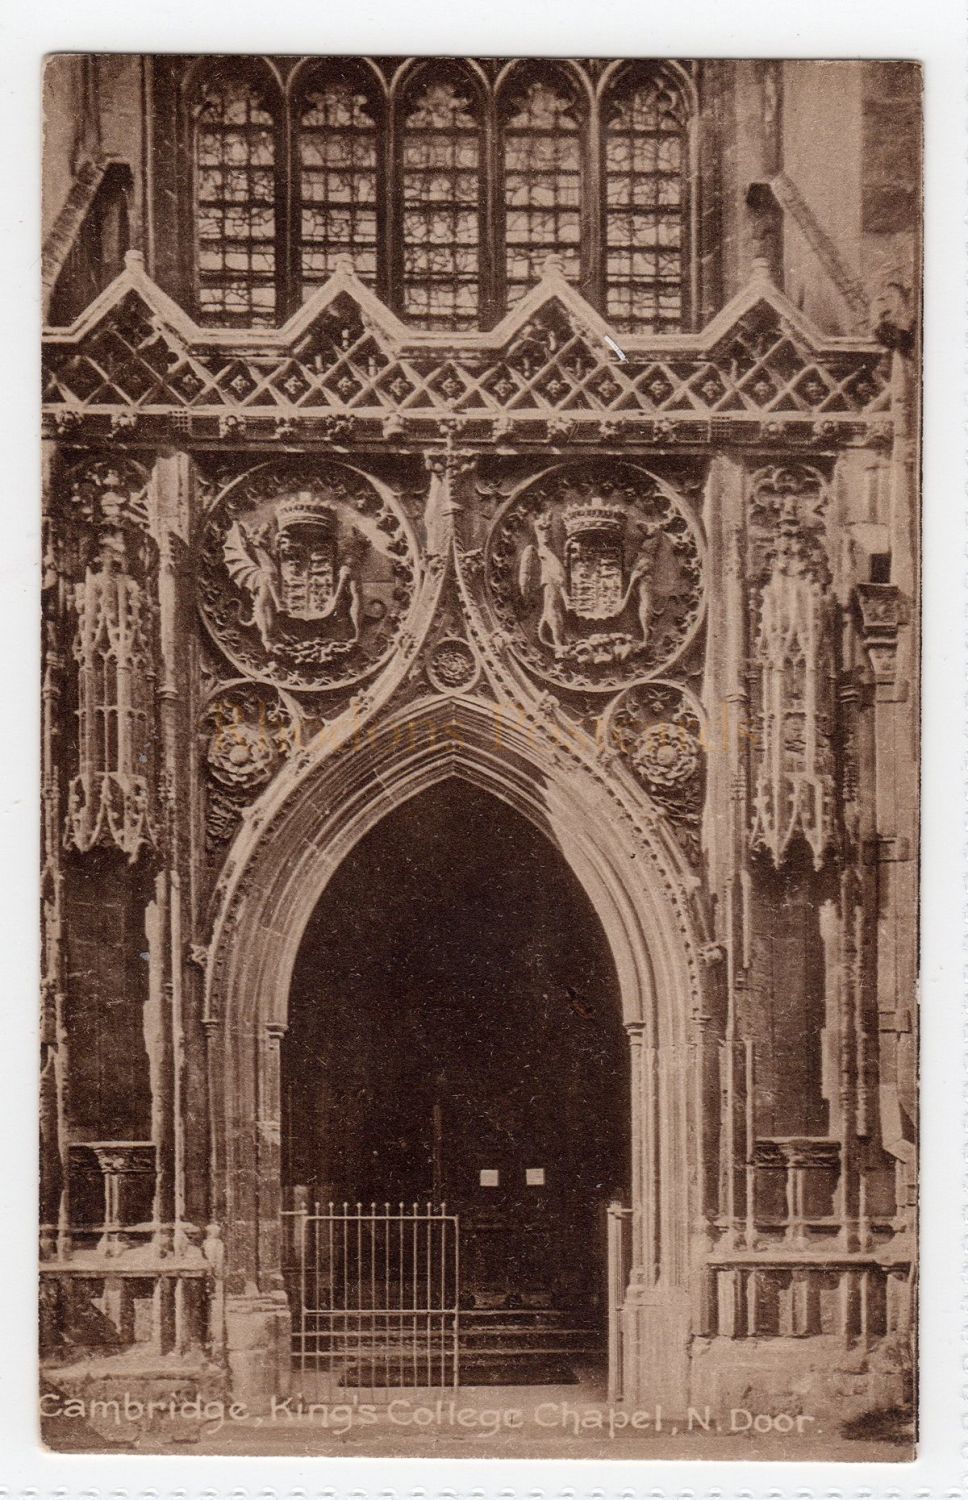 Kings College Chapel, Cambridge. North Door View Postcard 